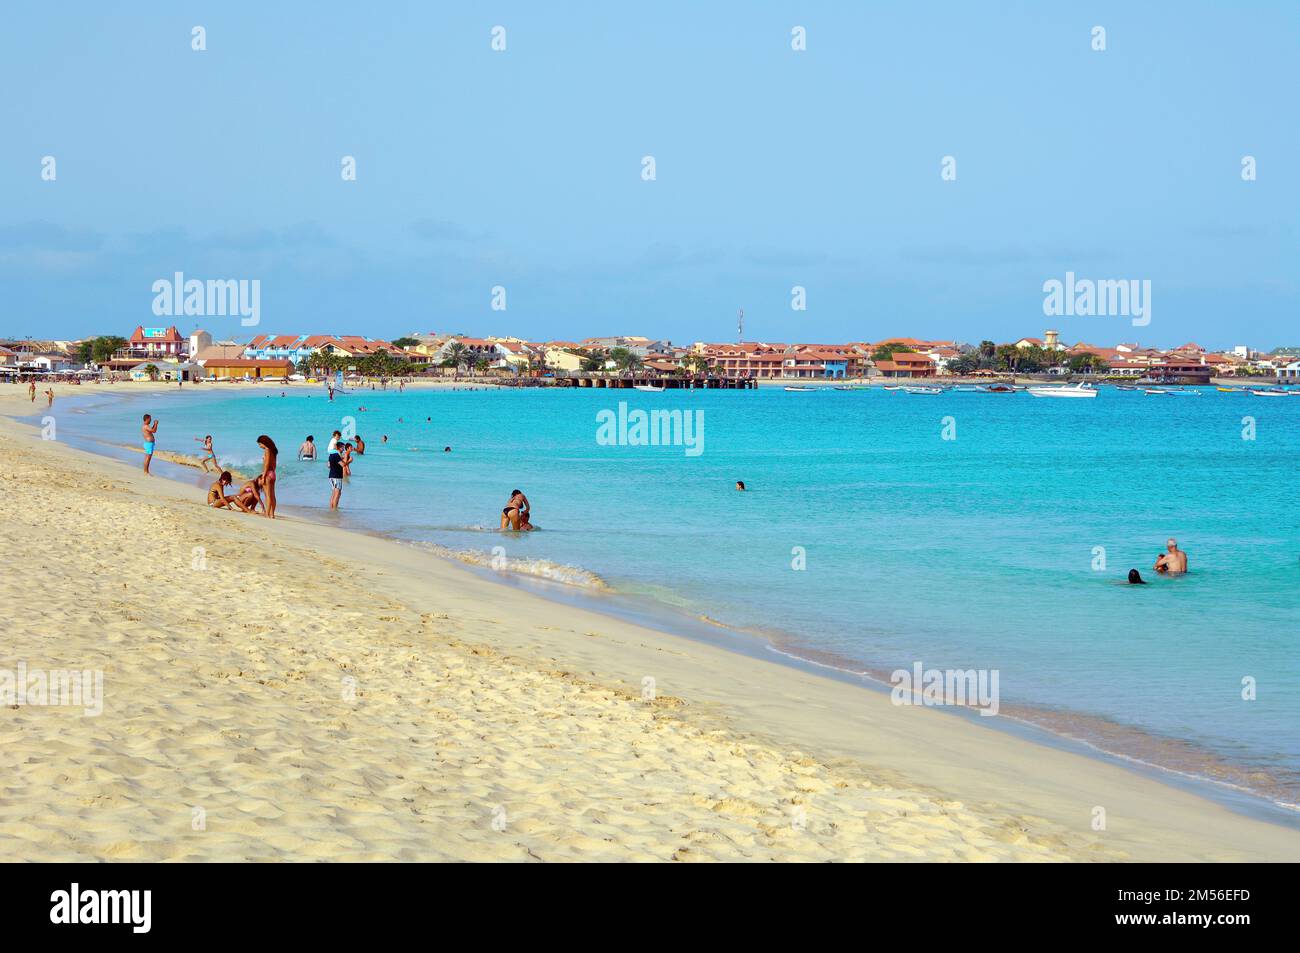 Urlauber planschen baden im Meer vor Sandstrand Strand, im Hintergrund Hotelanlage, Insel Sal, Kapverdische Inseln, Kapverden Stock Photo